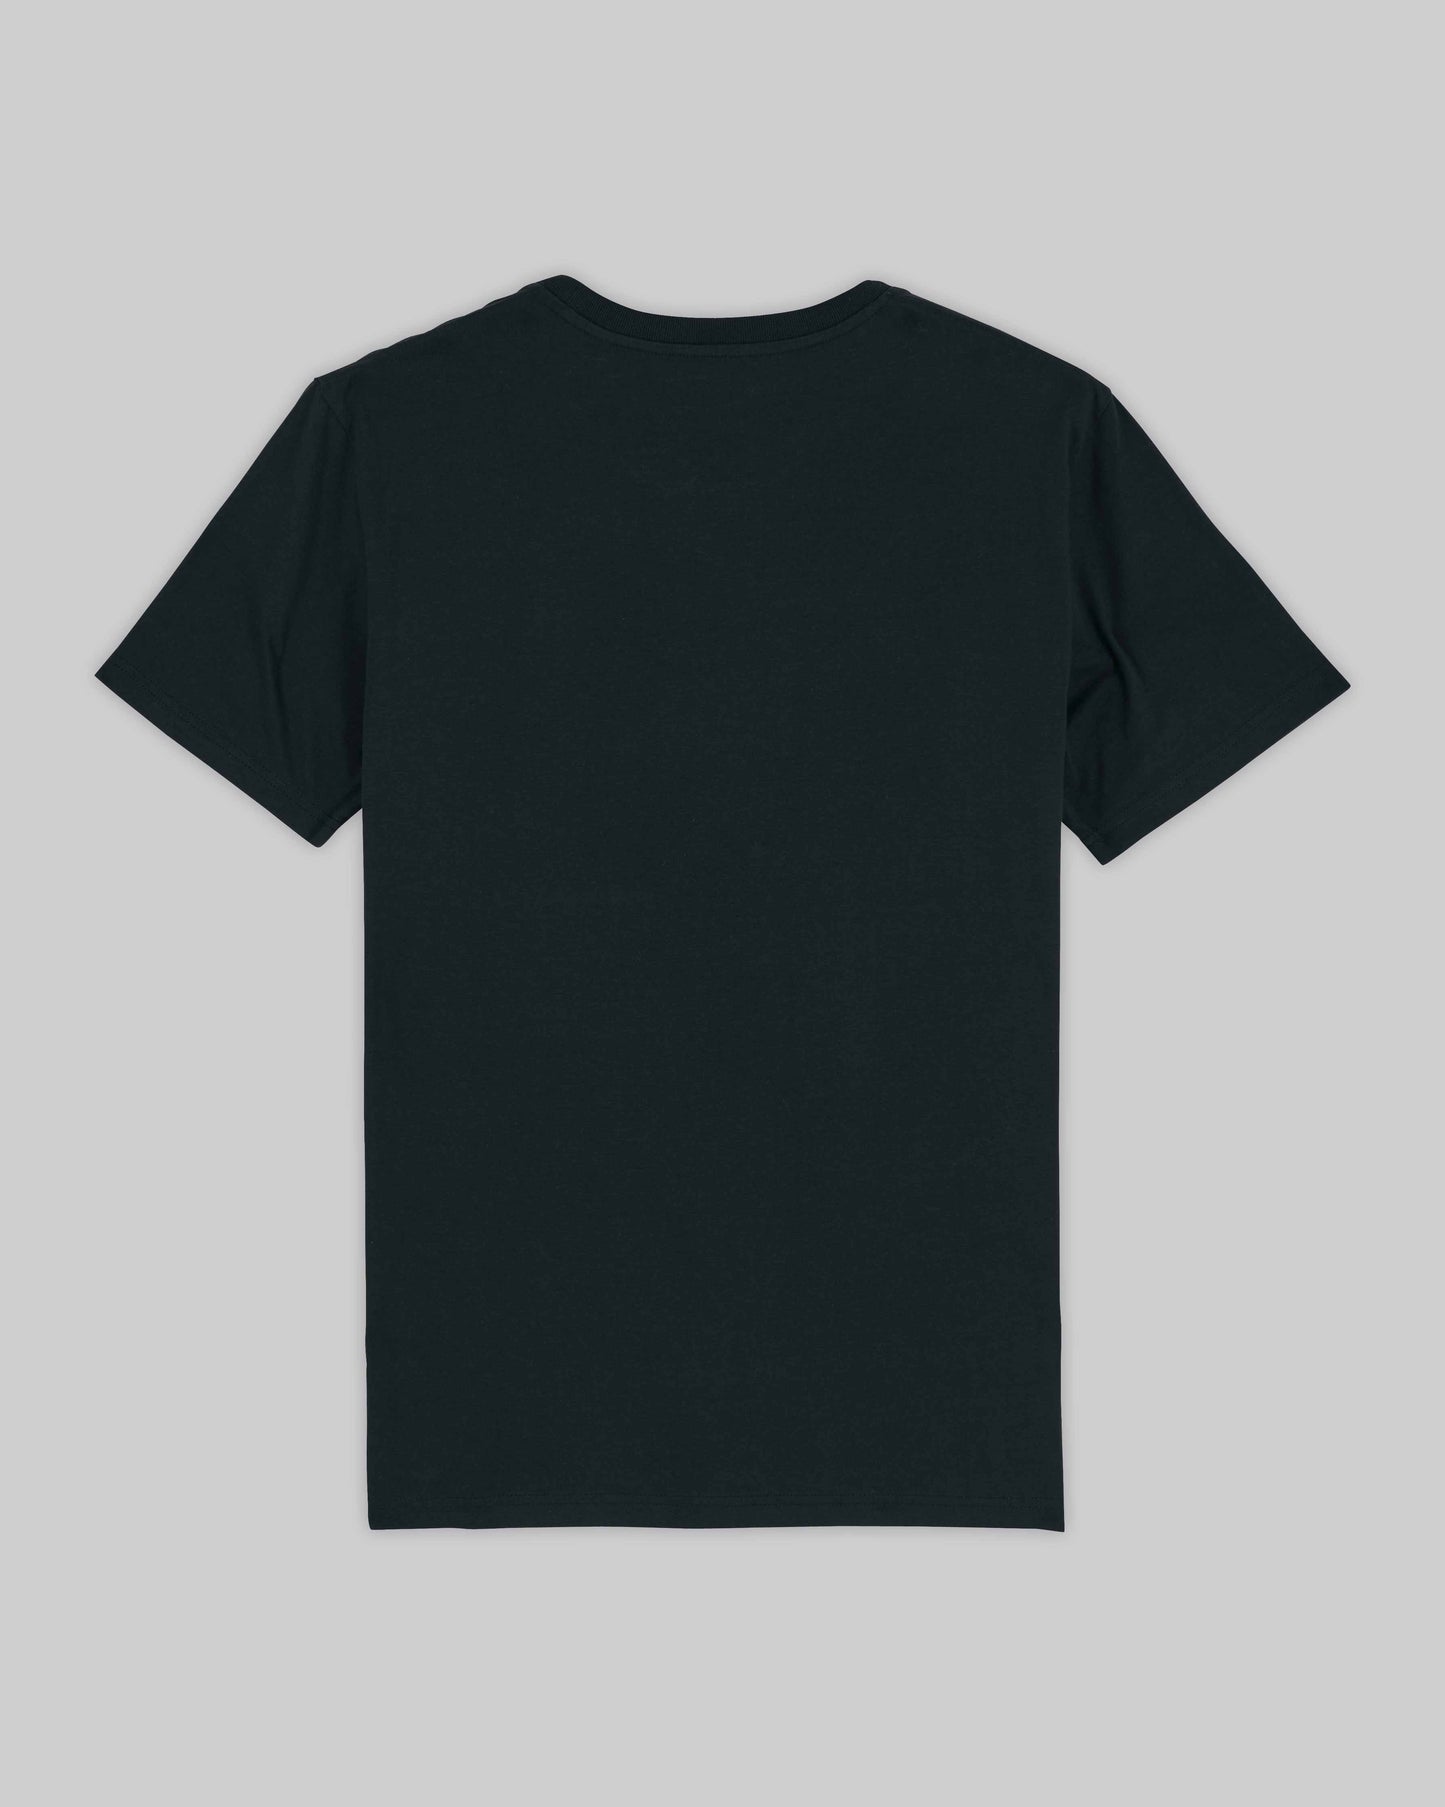 EINHORST® unisex Organic Shirt in Schwarz mit dem Motiv "equal-Regenbogen" in der Kombination weißer Regenbogen mit weißer Schrift, Bild von Shirt von hinten